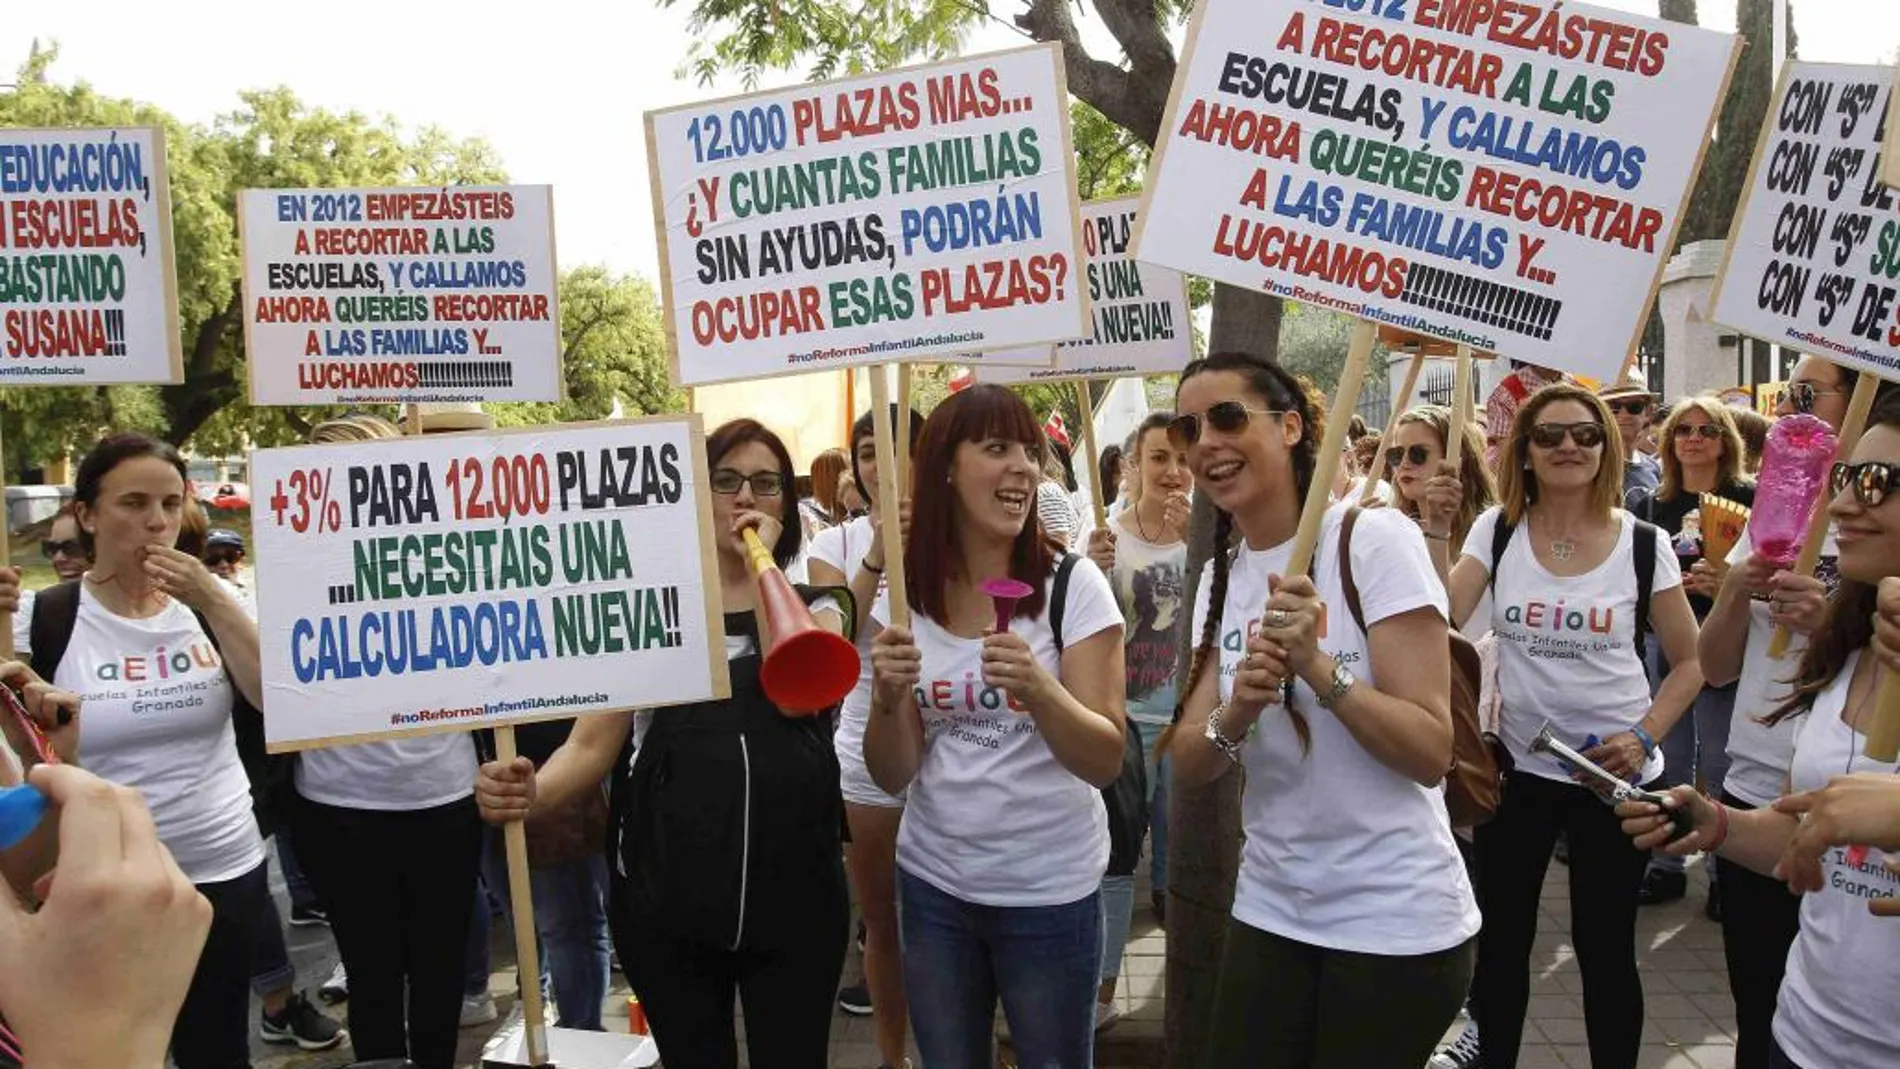 La aprobación unilateral por parte del Gobierno andaluz del nuevo decreto de Infantil provocó las protestas de los afectados